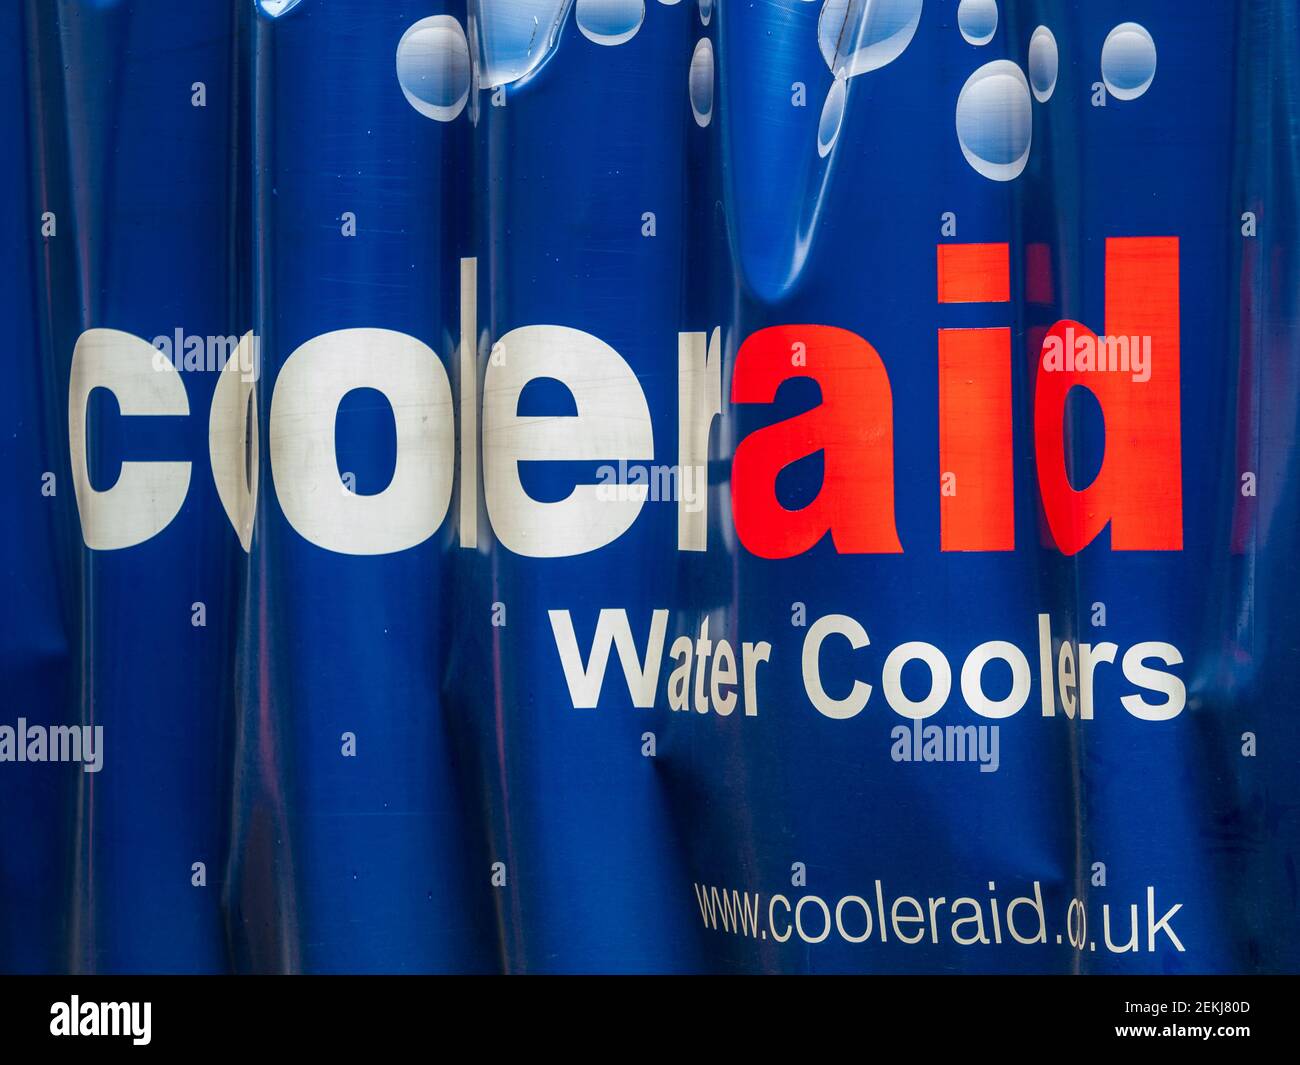 Logo Cooleraid Ltd sur une bâche de livraison pour camion - Cooleraid est un des principaux fournisseurs de refroidisseurs et de distributeurs d'eau au Royaume-Uni. Est 1993. Banque D'Images